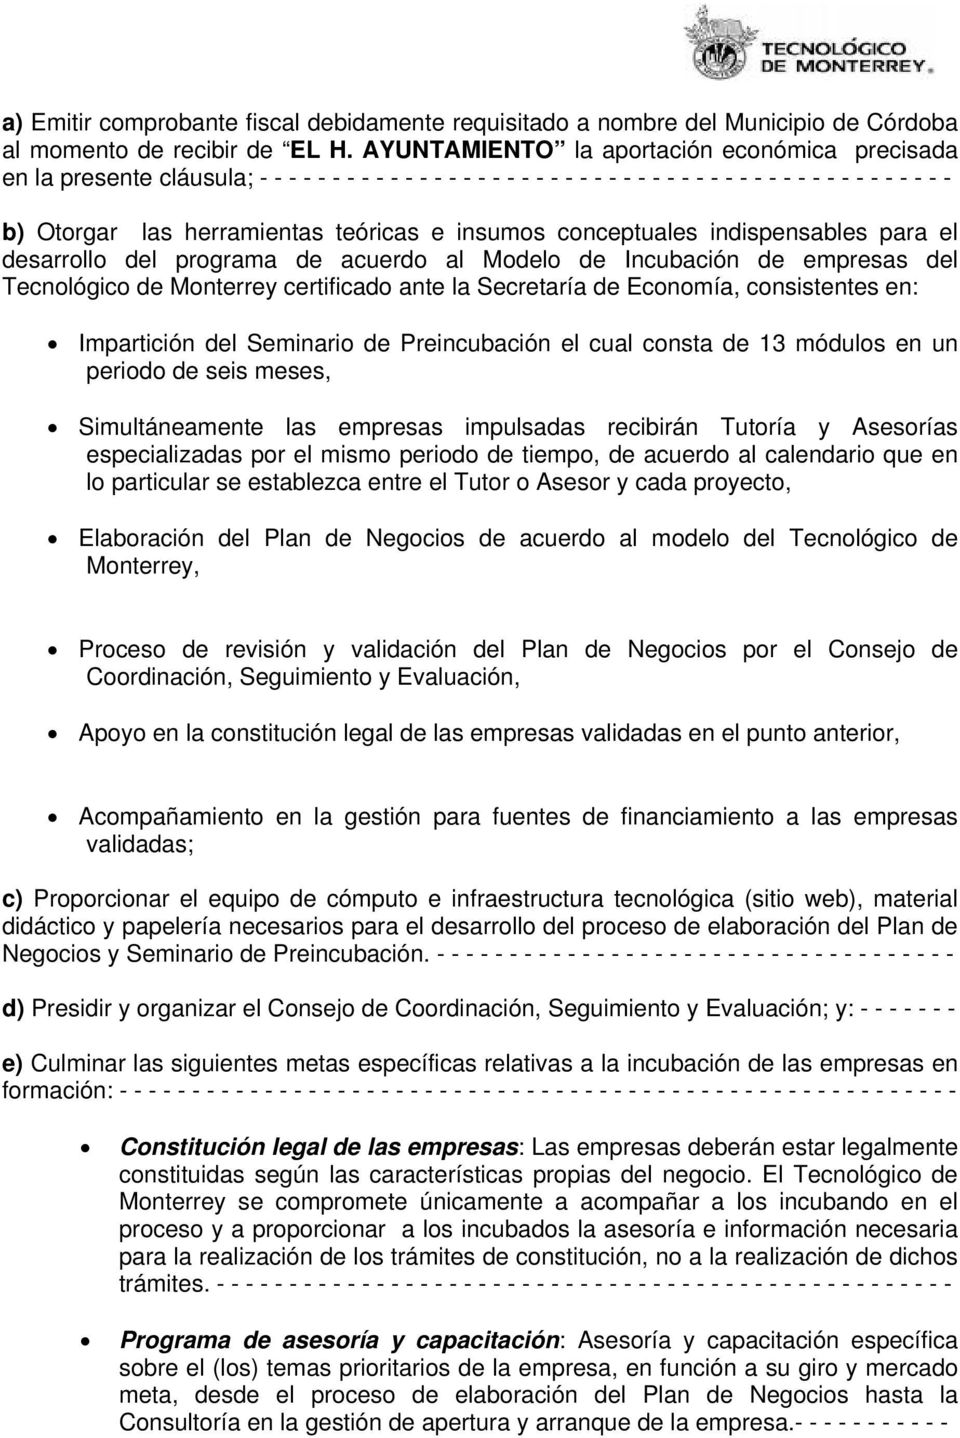 teóricas e insumos conceptuales indispensables para el desarrollo del programa de acuerdo al Modelo de Incubación de empresas del Tecnológico de Monterrey certificado ante la Secretaría de Economía,